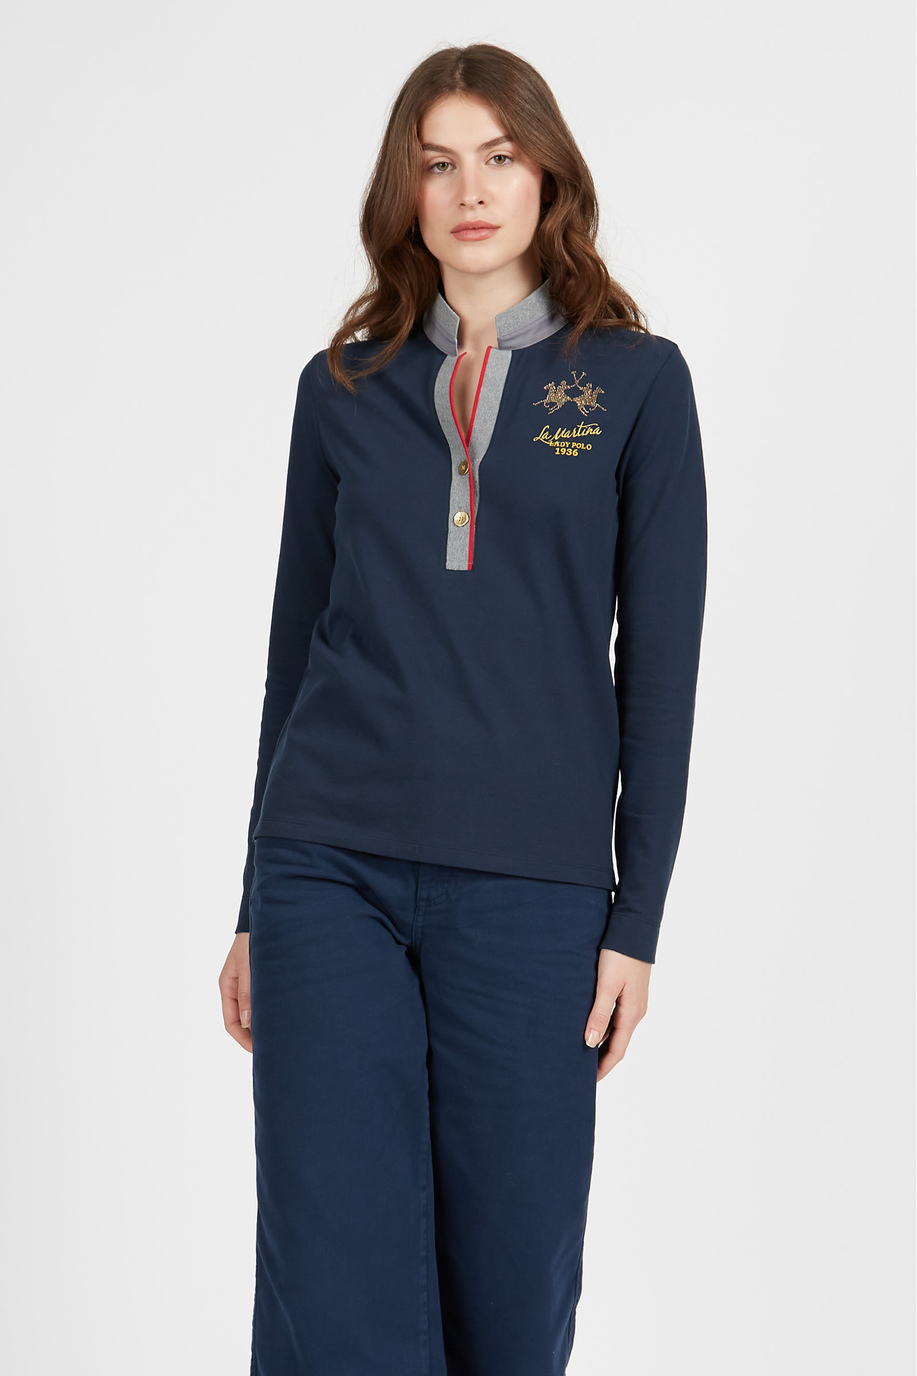 Damen Langarmshirt aus regular fit elastischer Baumwolle - Sportlich-schicke Kleidung | La Martina - Official Online Shop